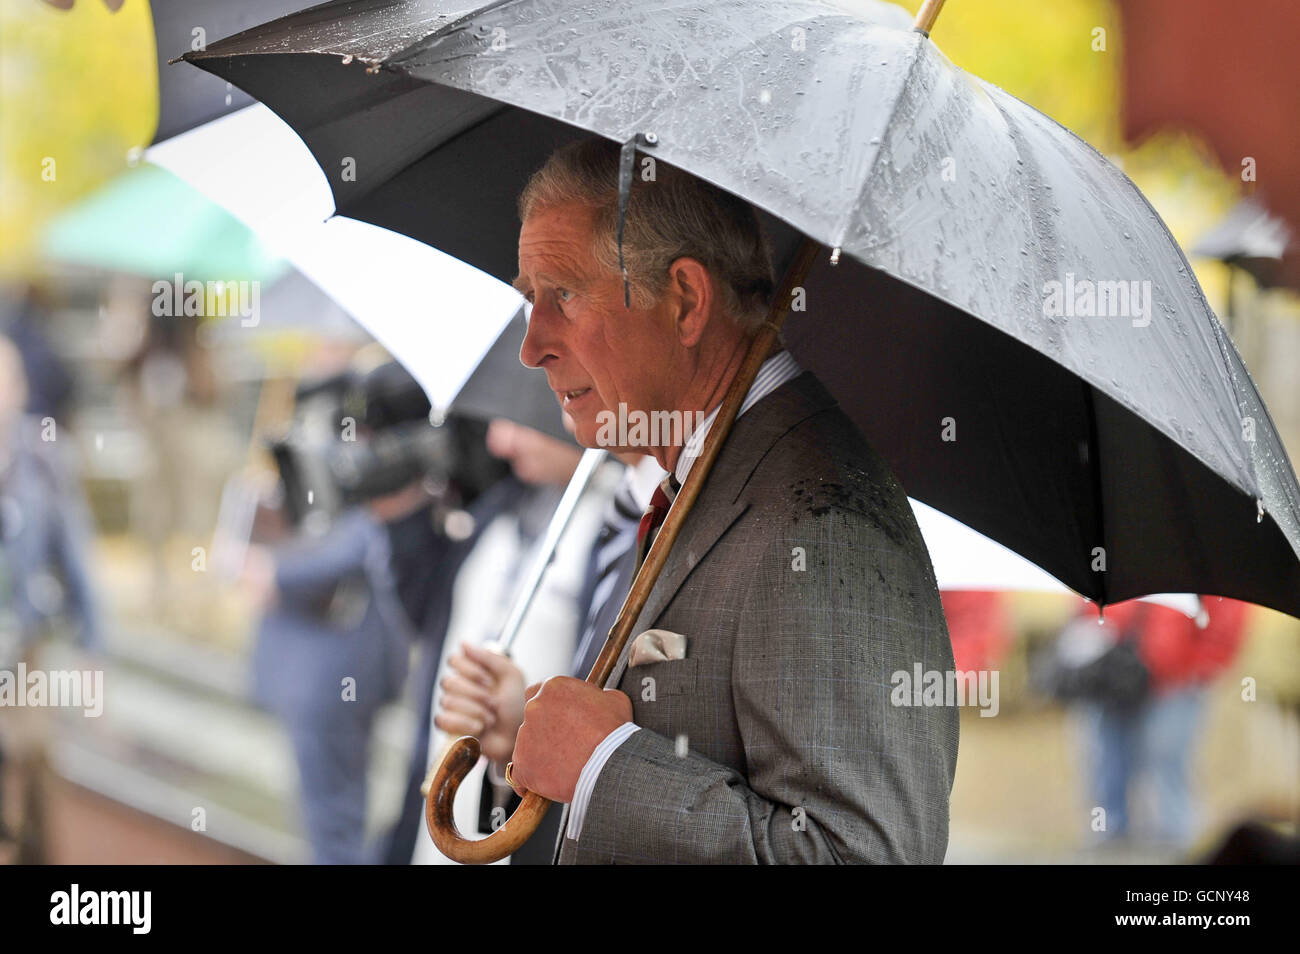 Le Prince de Galles avec son parapluie après une grosse déverse dans les Jardins botaniques nationaux du pays de Galles à Carmarthen alors qu'il poursuit sa tournée en Grande-Bretagne pour promouvoir son initiative de vie durable. Banque D'Images